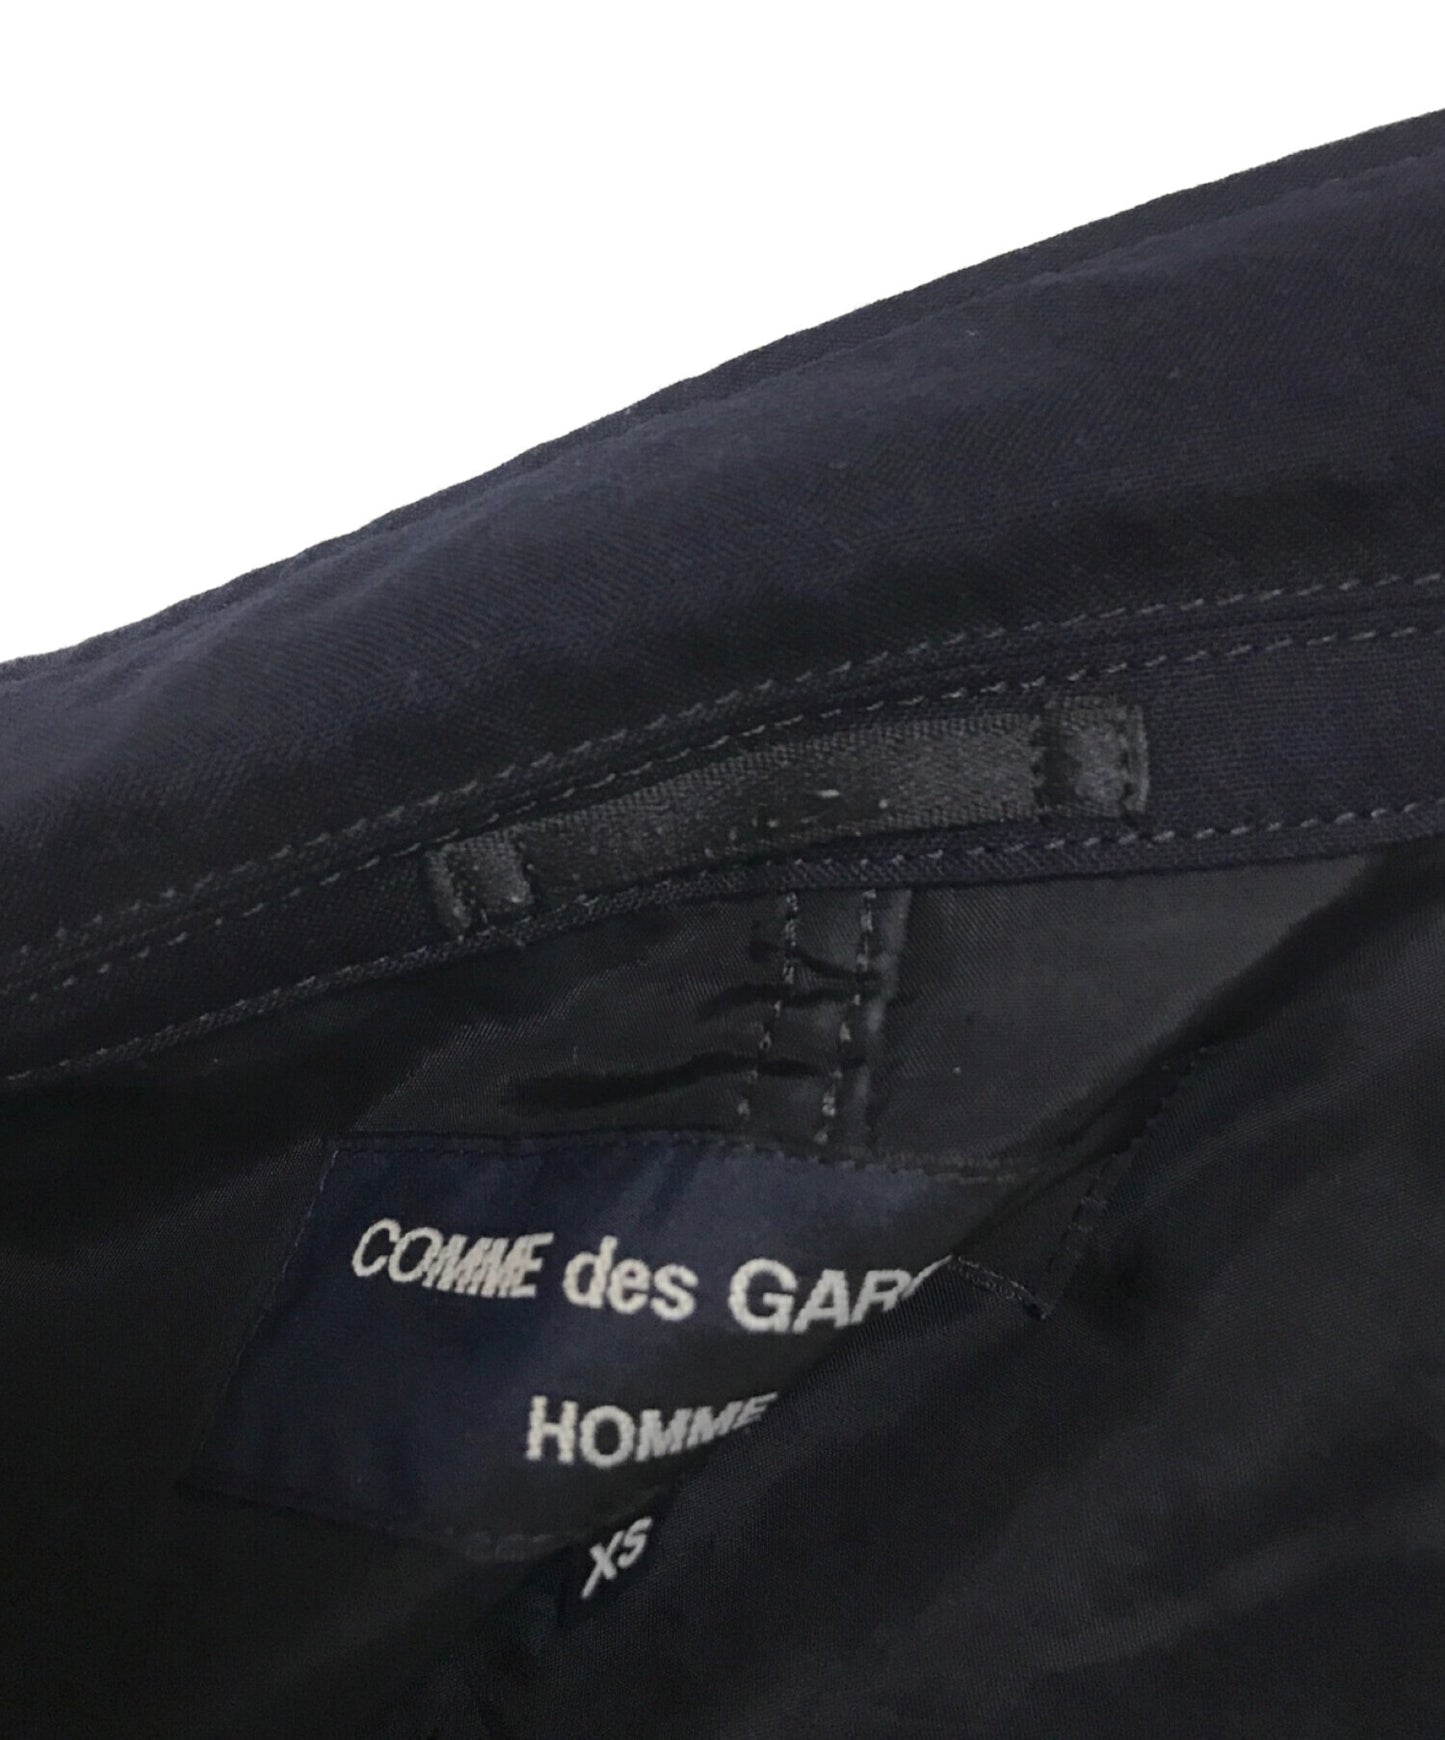 Comme des Garcons Homme Wool Toro 패키지 맞춤형 재킷 HS-J101